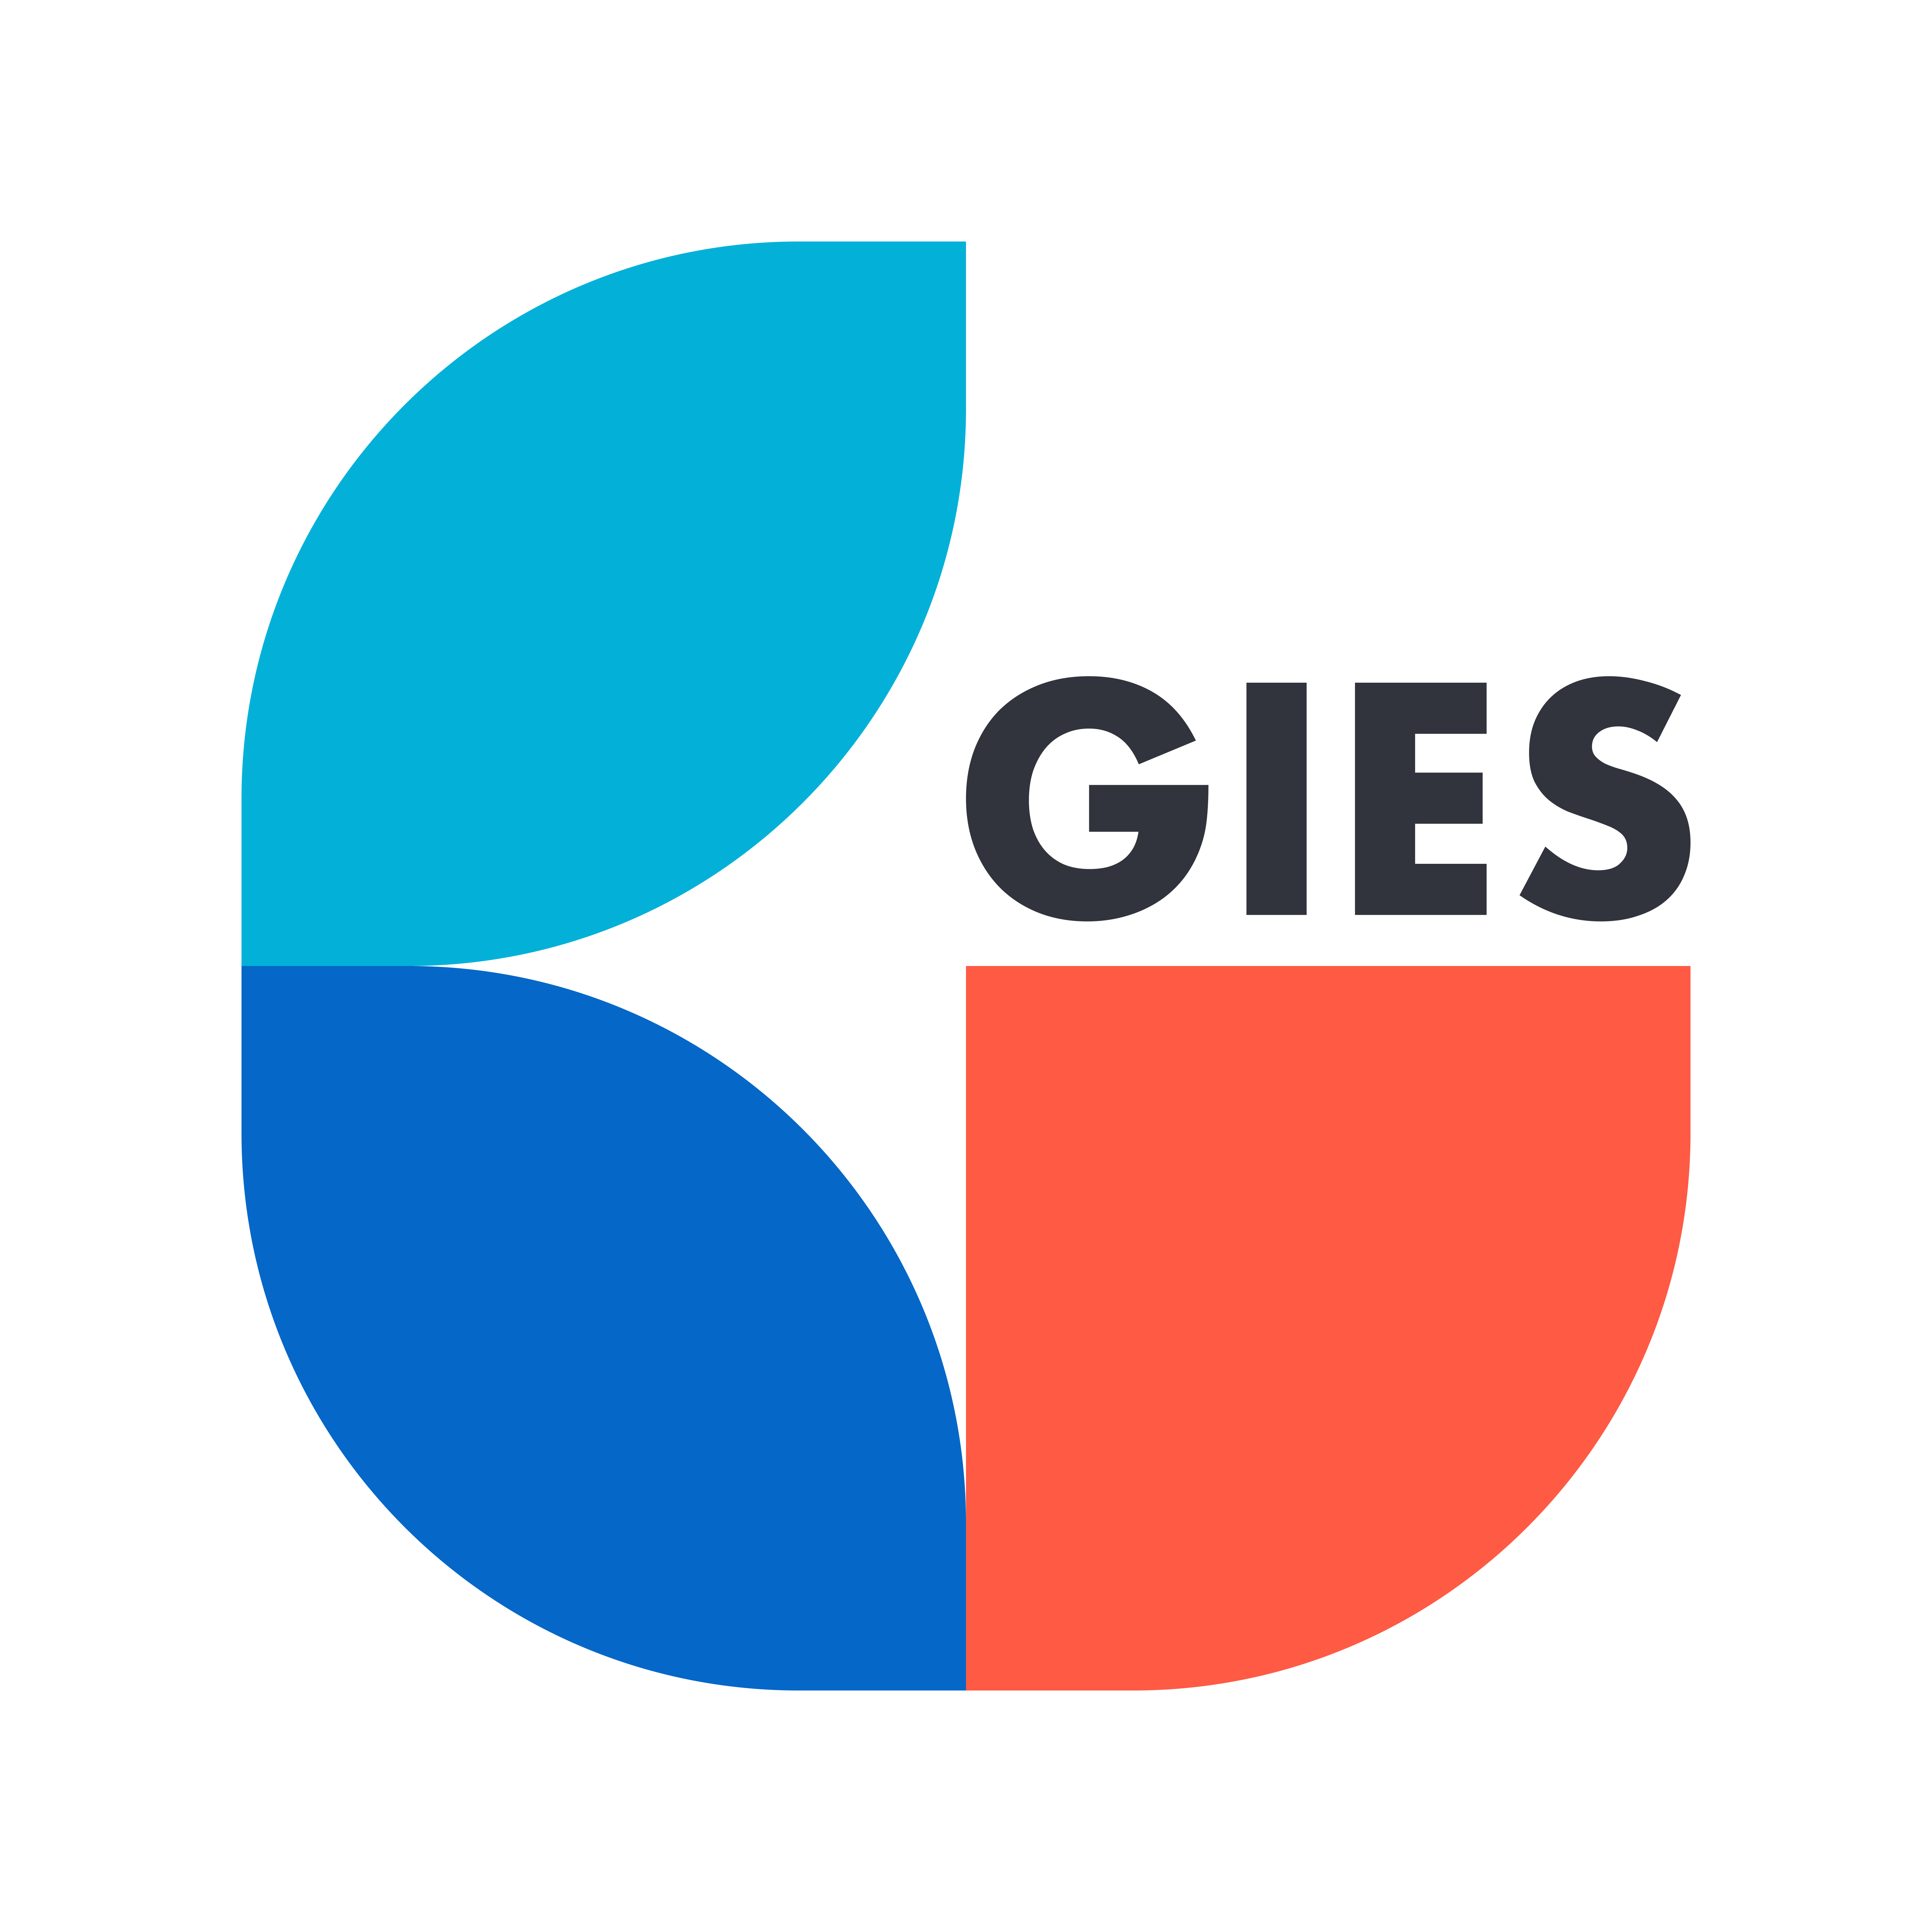 GIES - Grupul de Inovație și Expertiză Socială logo